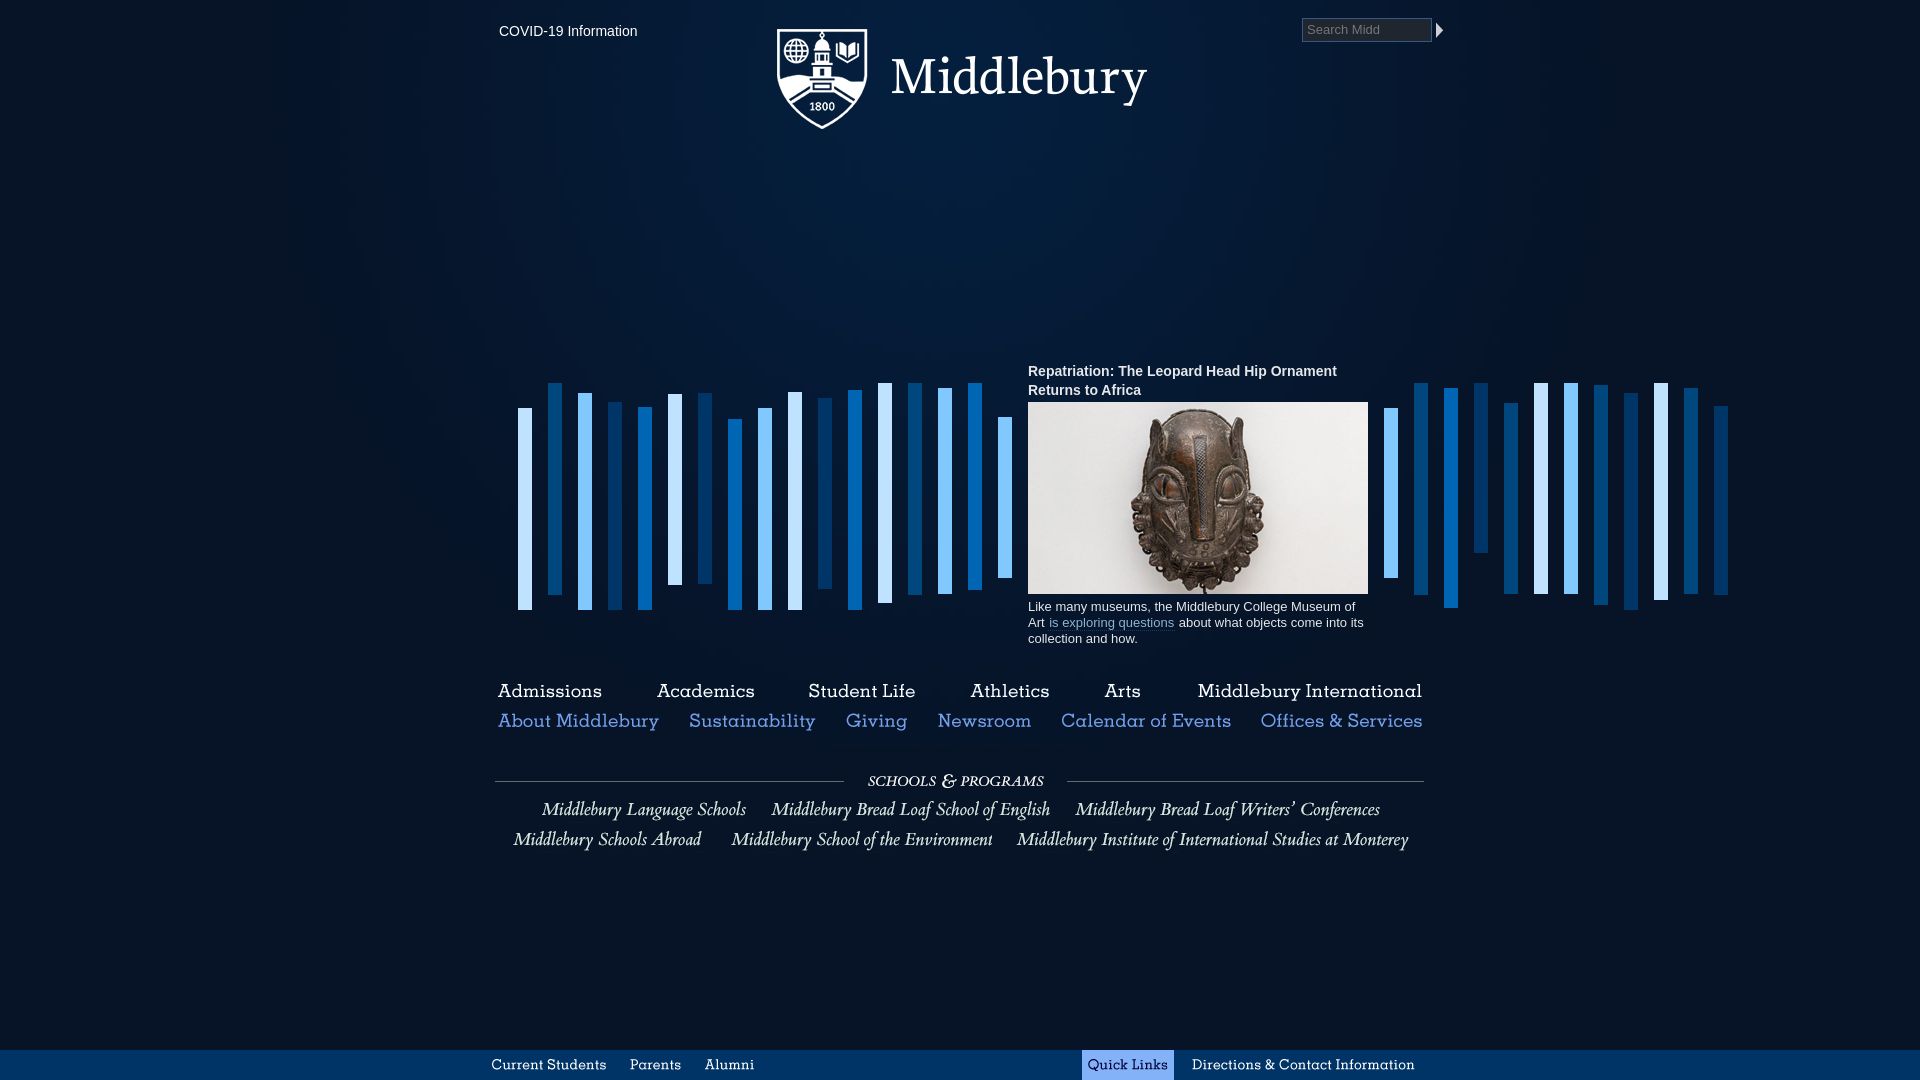 Website status middlebury.edu is   ONLINE